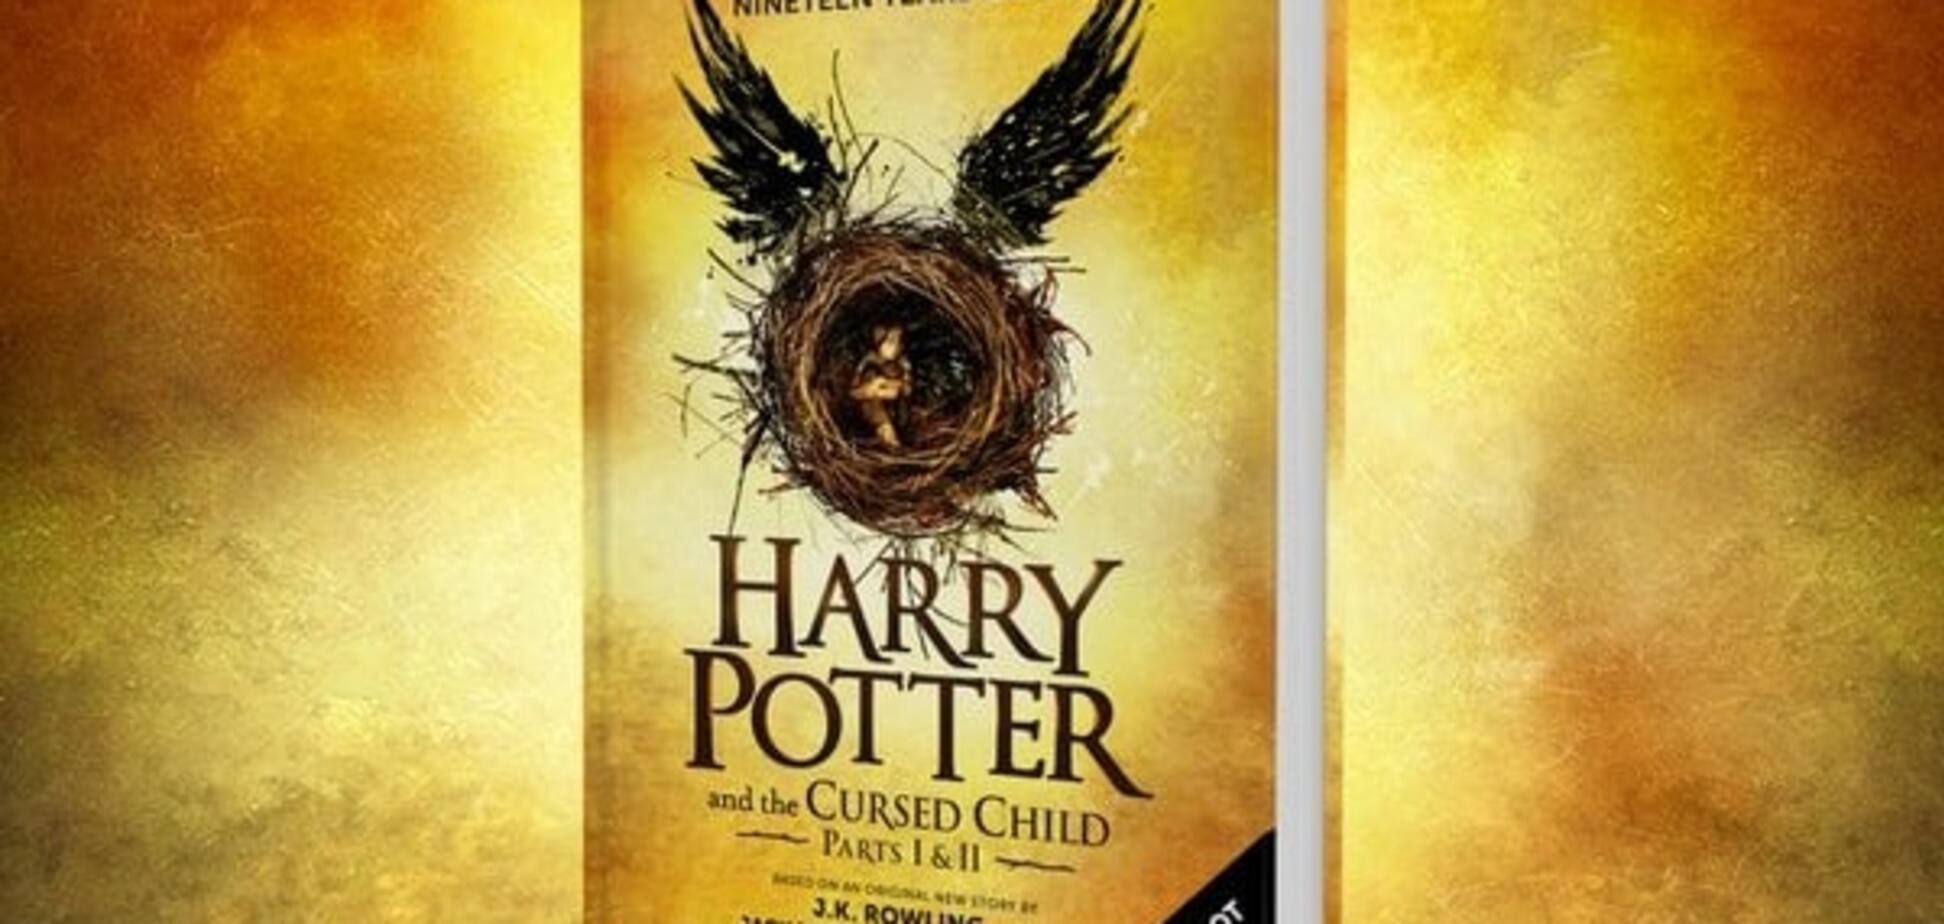 Названа дата выхода восьмой книги о Гарри Поттере